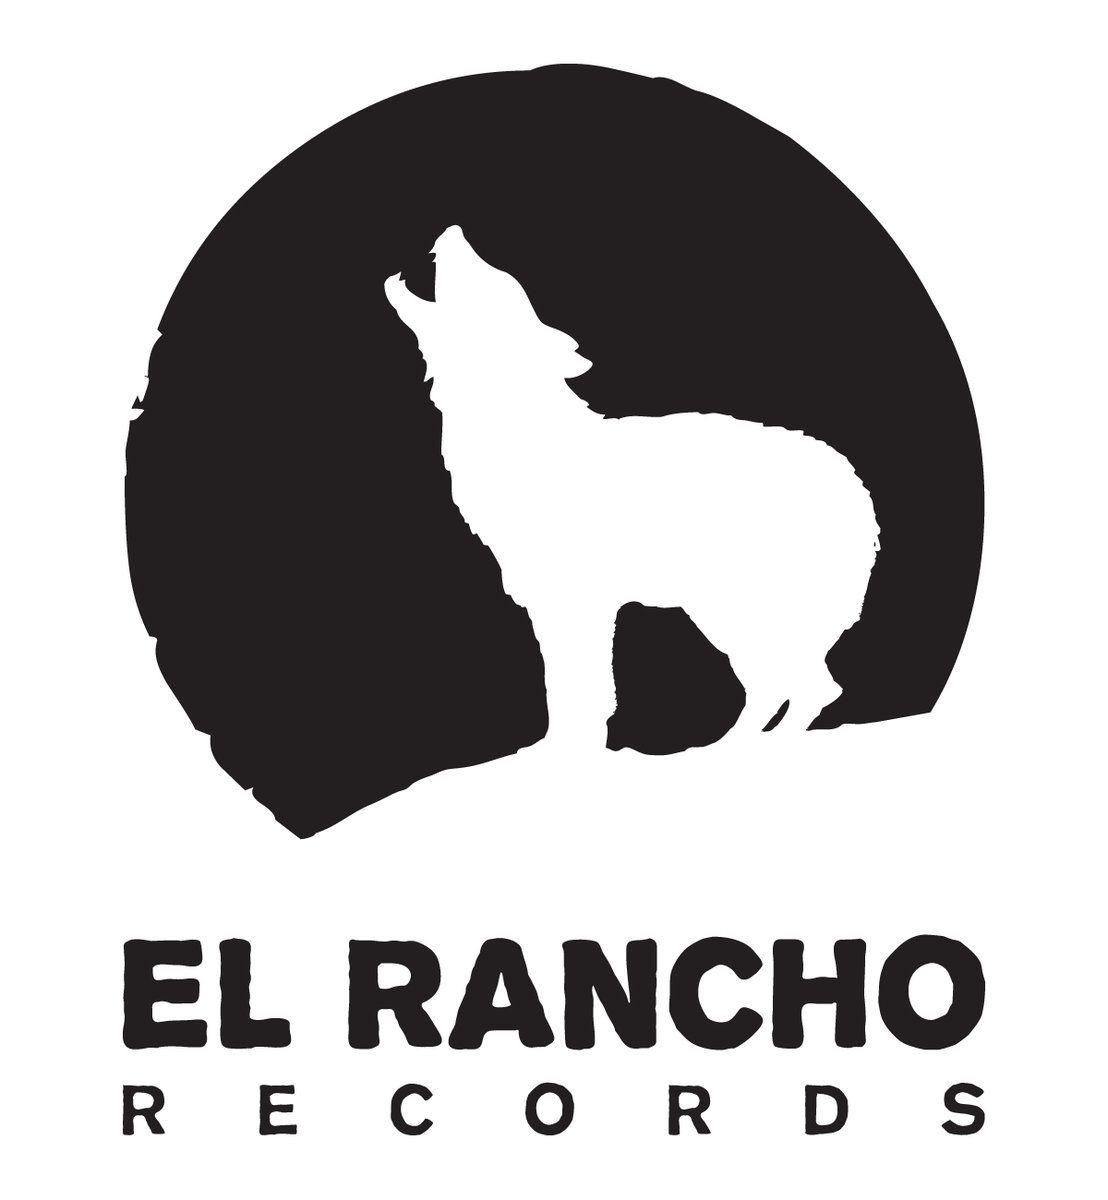 rancho-logo